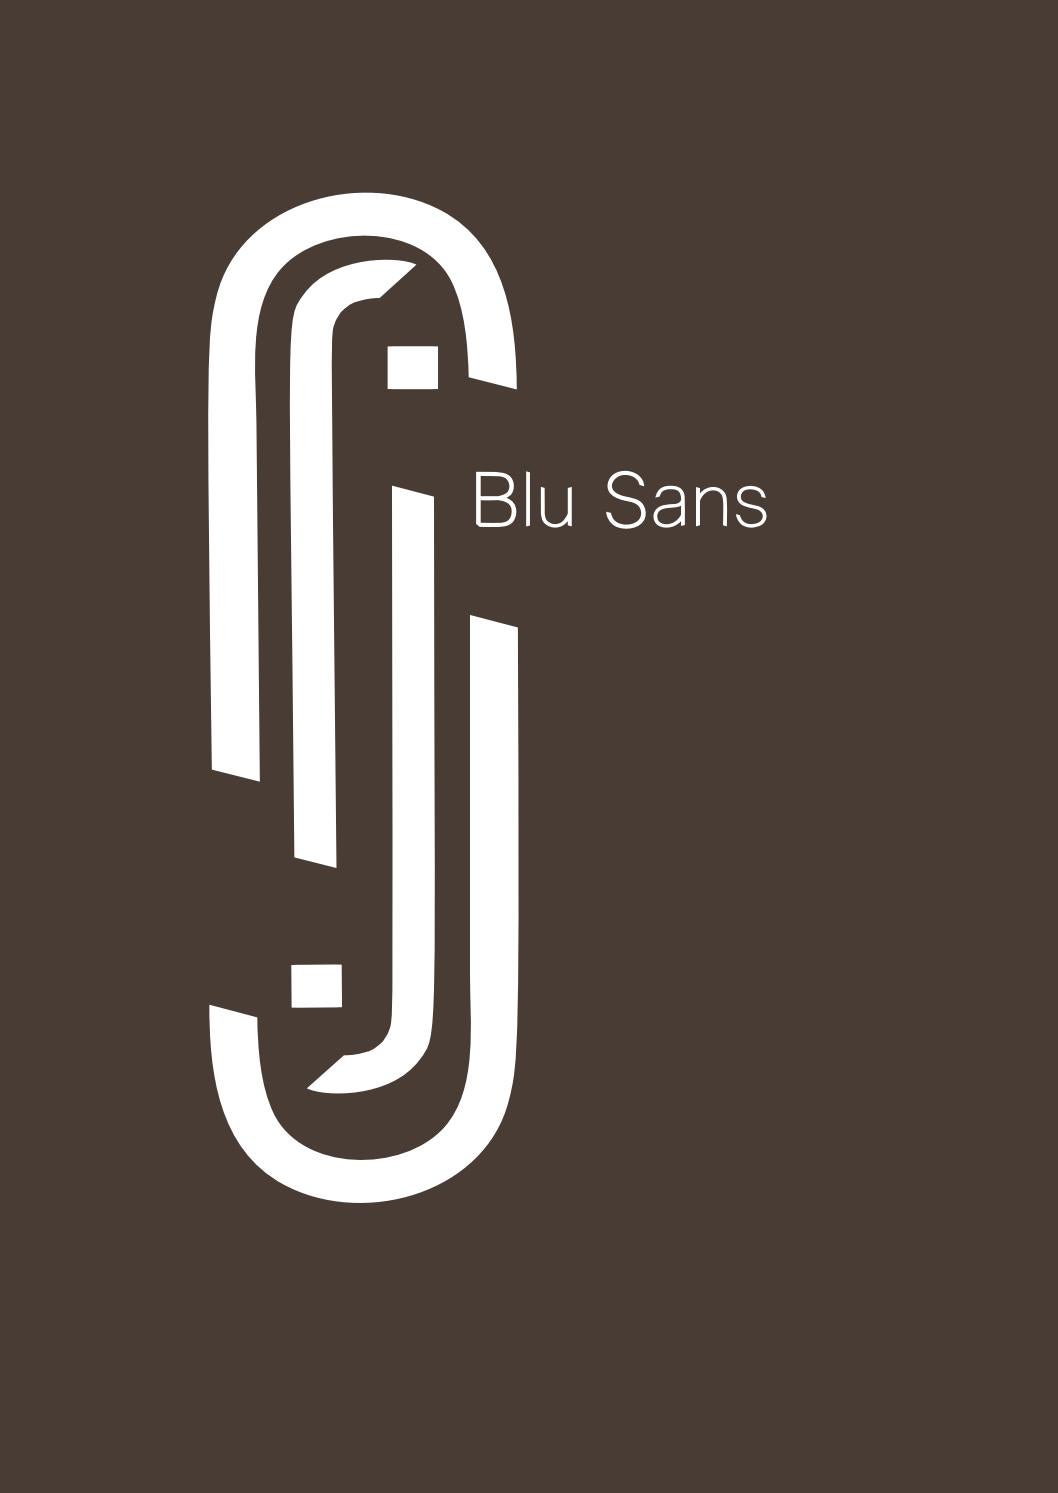 Beispiel einer Blu Sans-Schriftart